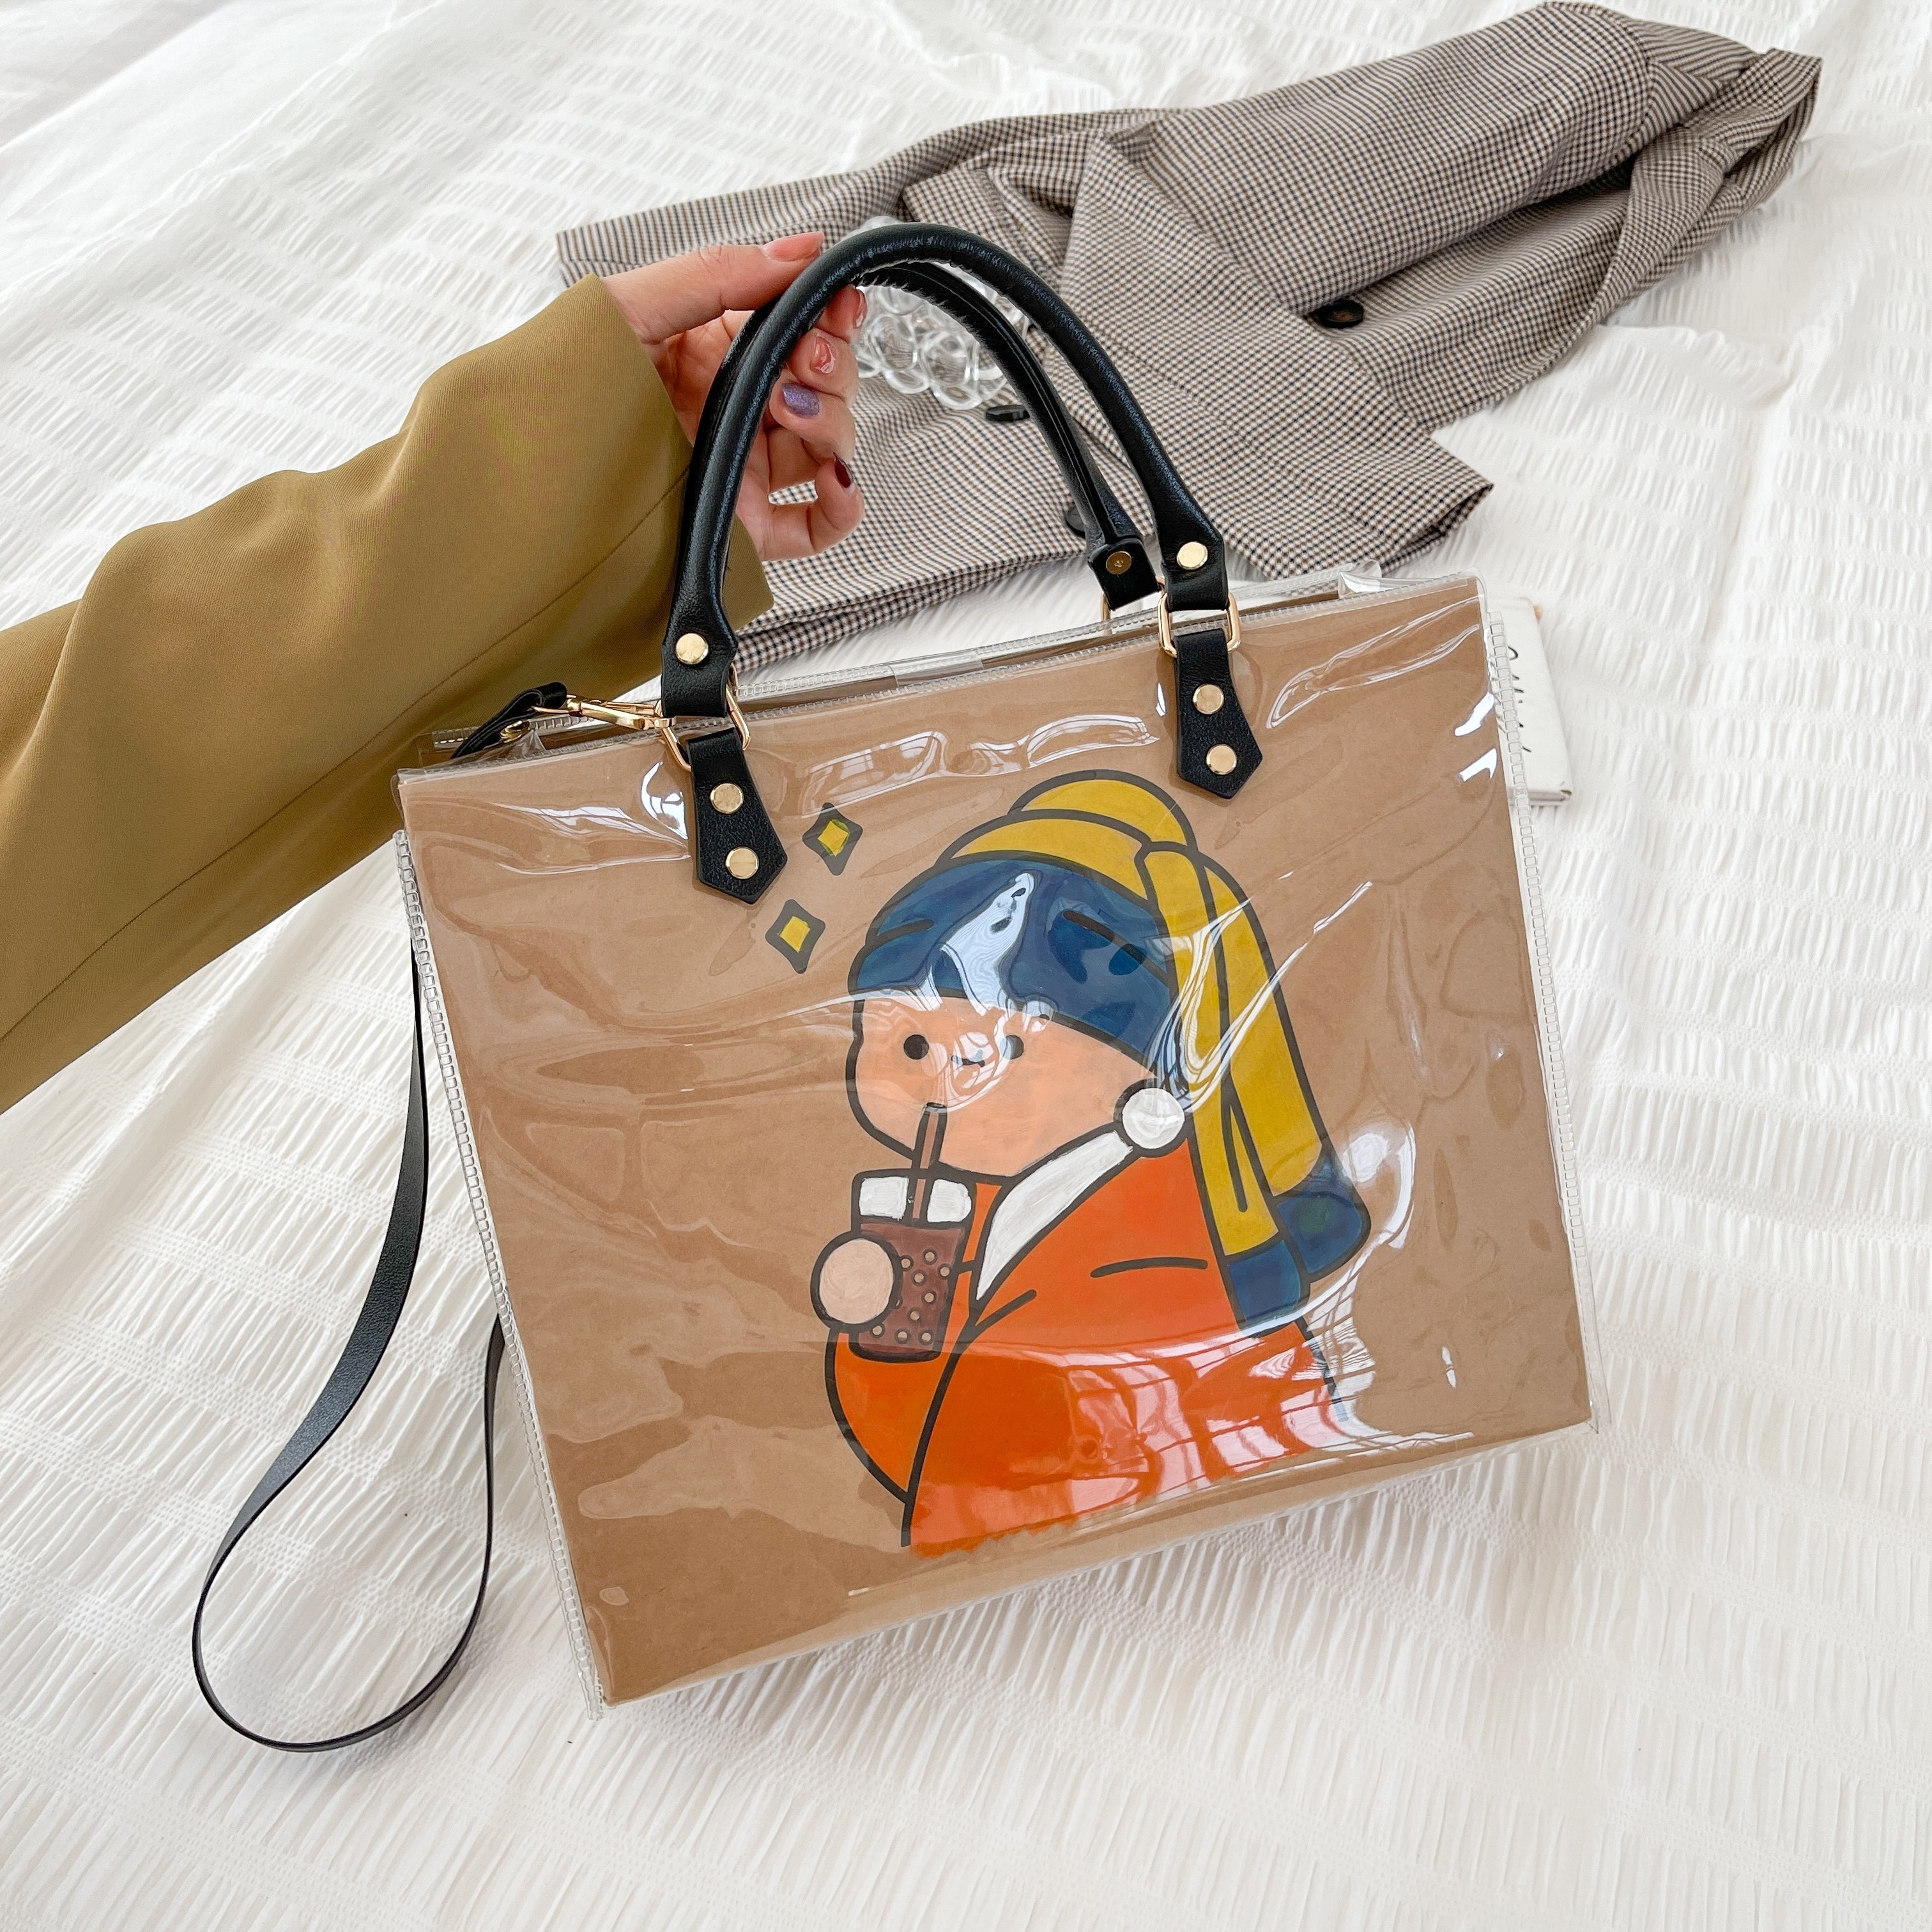 diy clear shopping bag kit lv